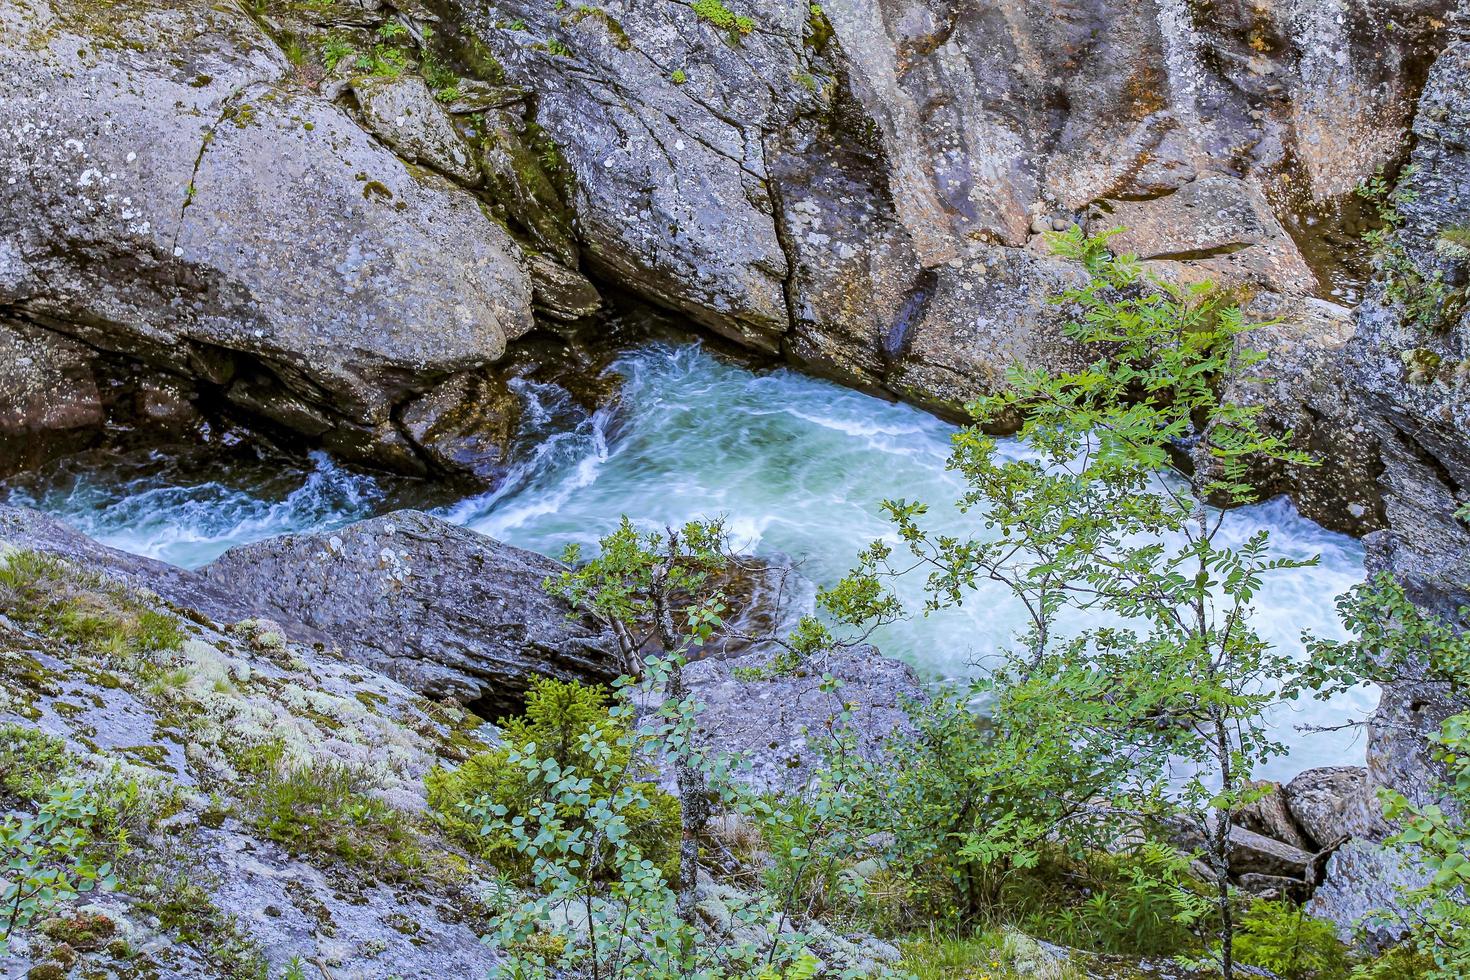 stromend rivierwater van de waterval rjukandefossen, hemsedal, noorwegen. foto